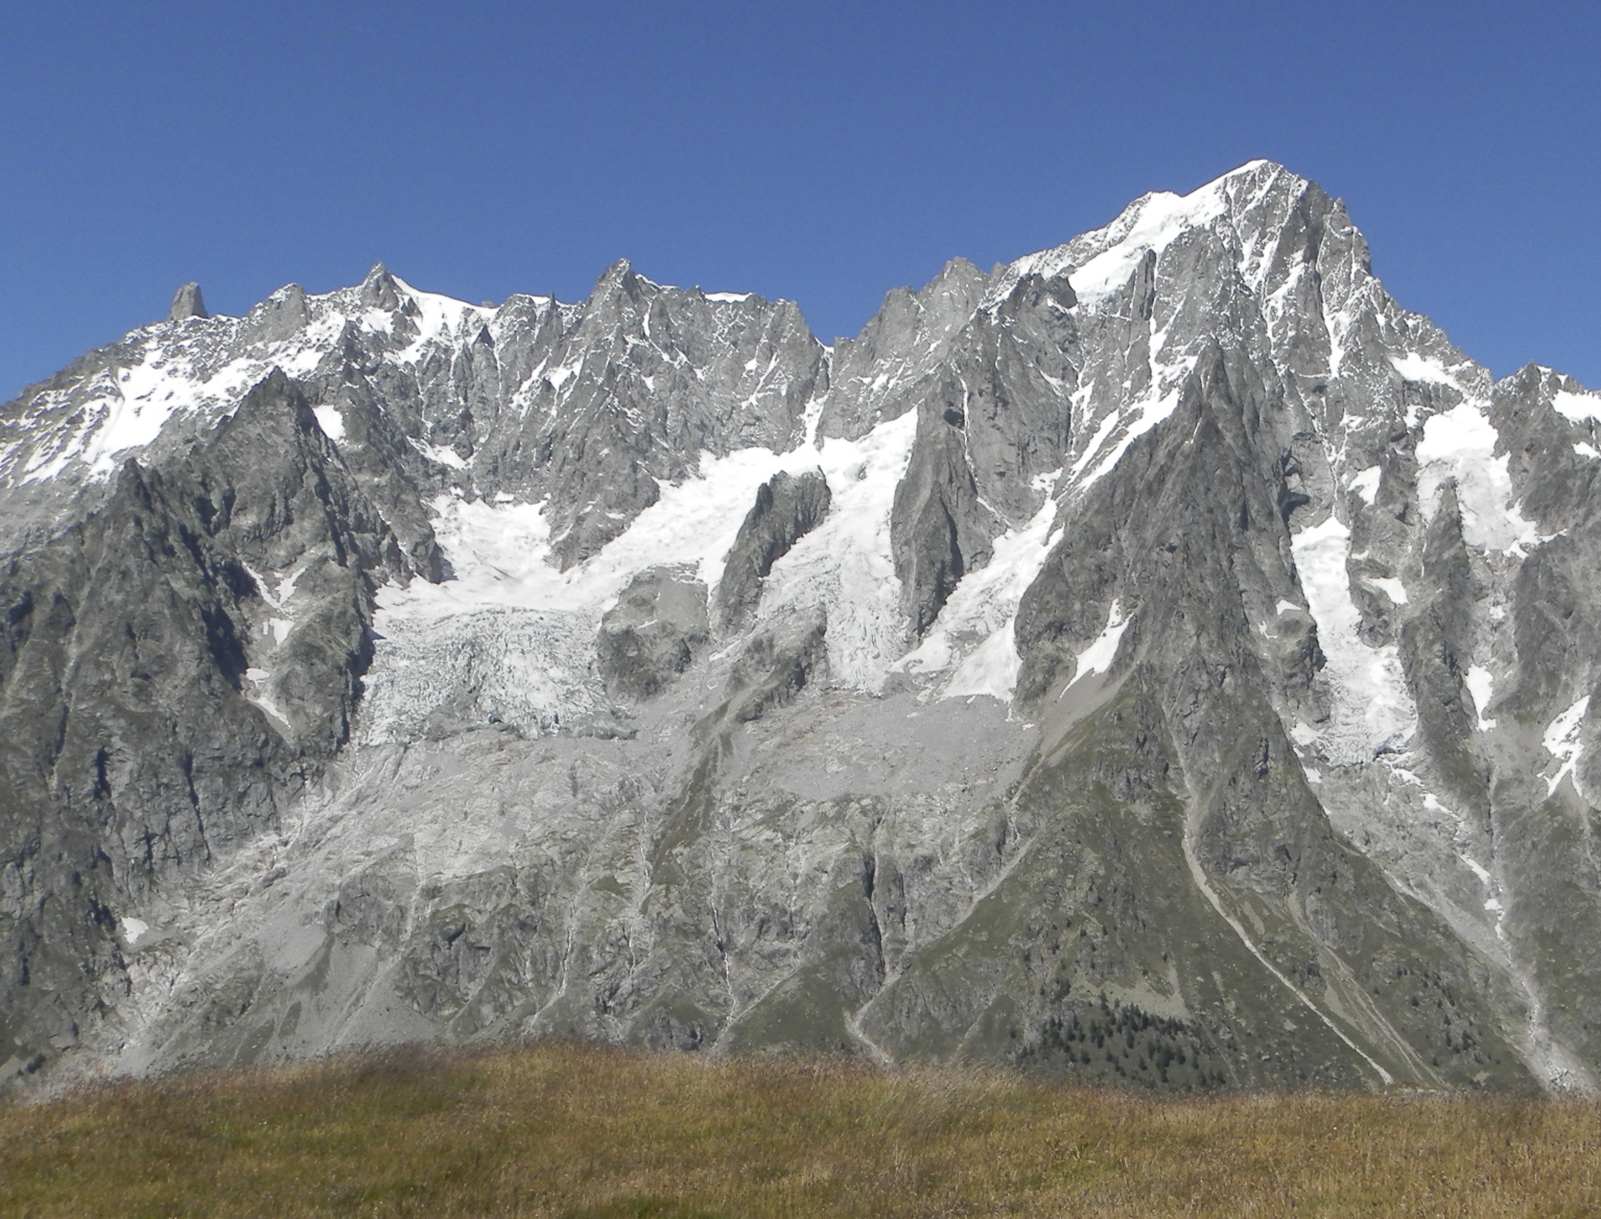 À cheval sur la Haute-Savoie (France) et la Vallée d'Aoste (Italie), la face sud des Grandes Jorasses et, à gauche, le glacier de Planpincieux sur le massif du Mont-Blanc.